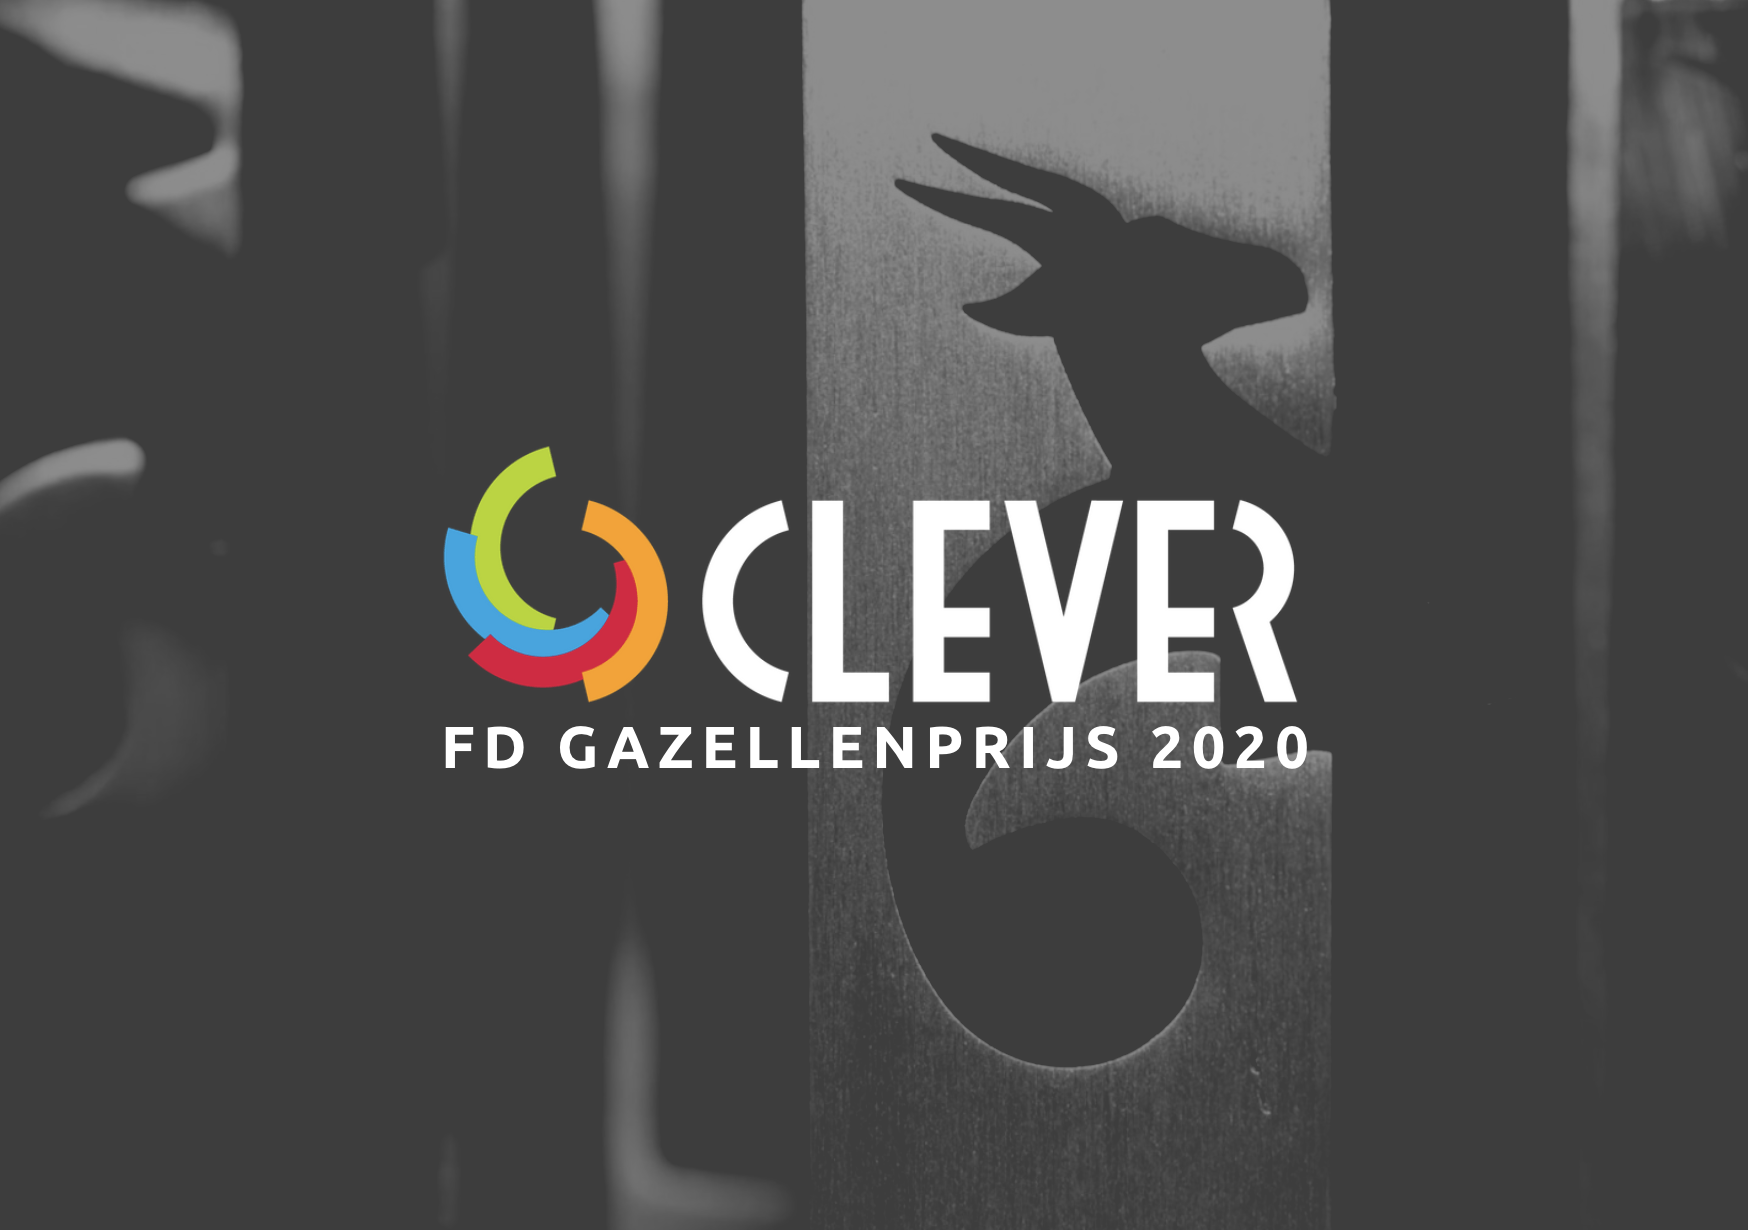 Clever Consultancy wint FD Gazellenprijs 2020